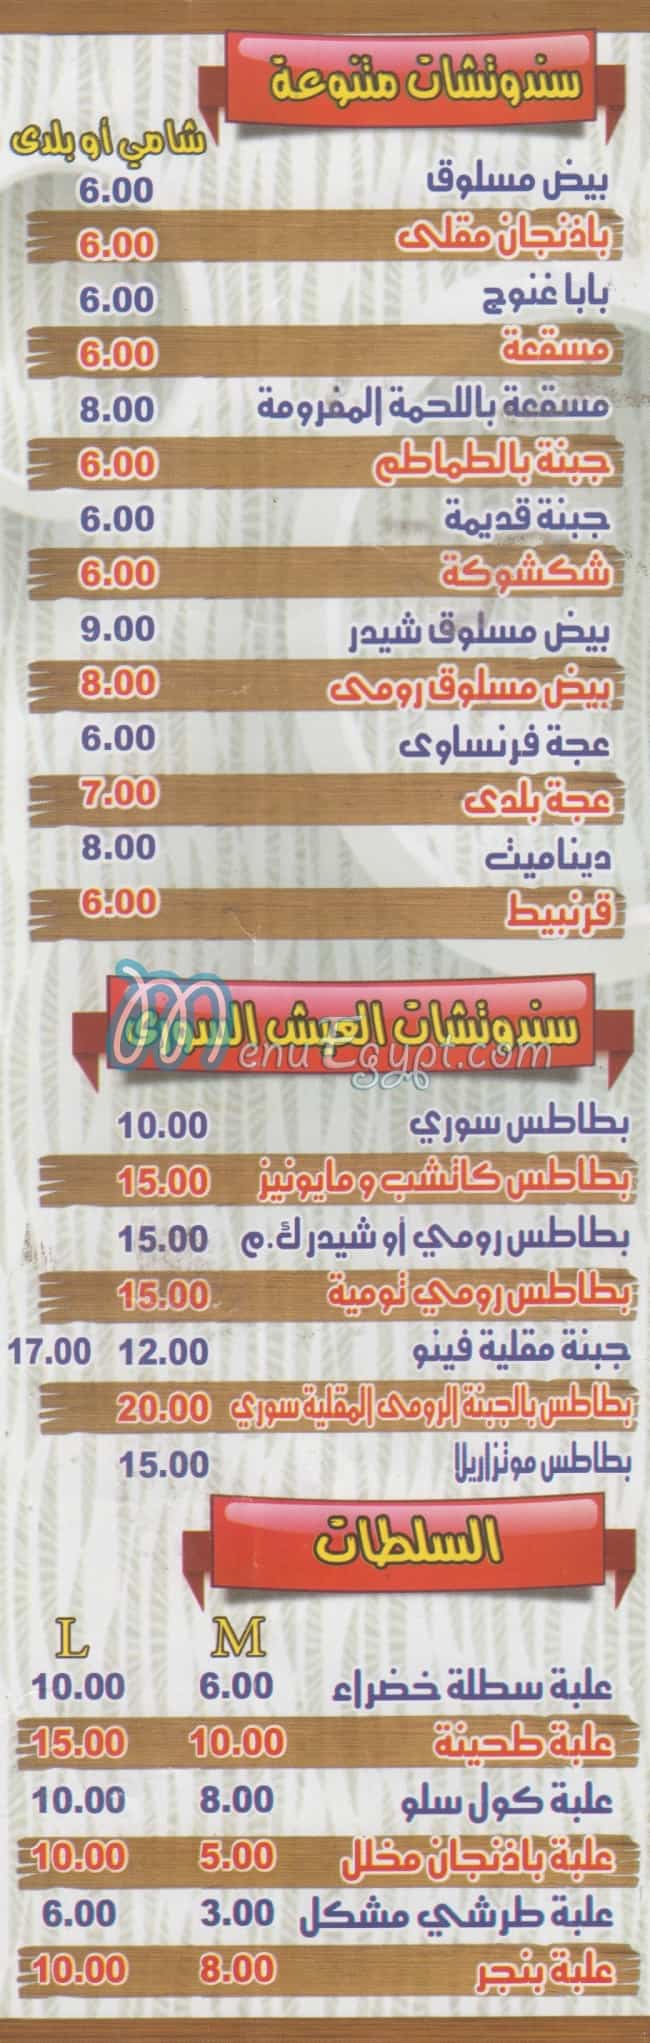 EL Tayeb online menu